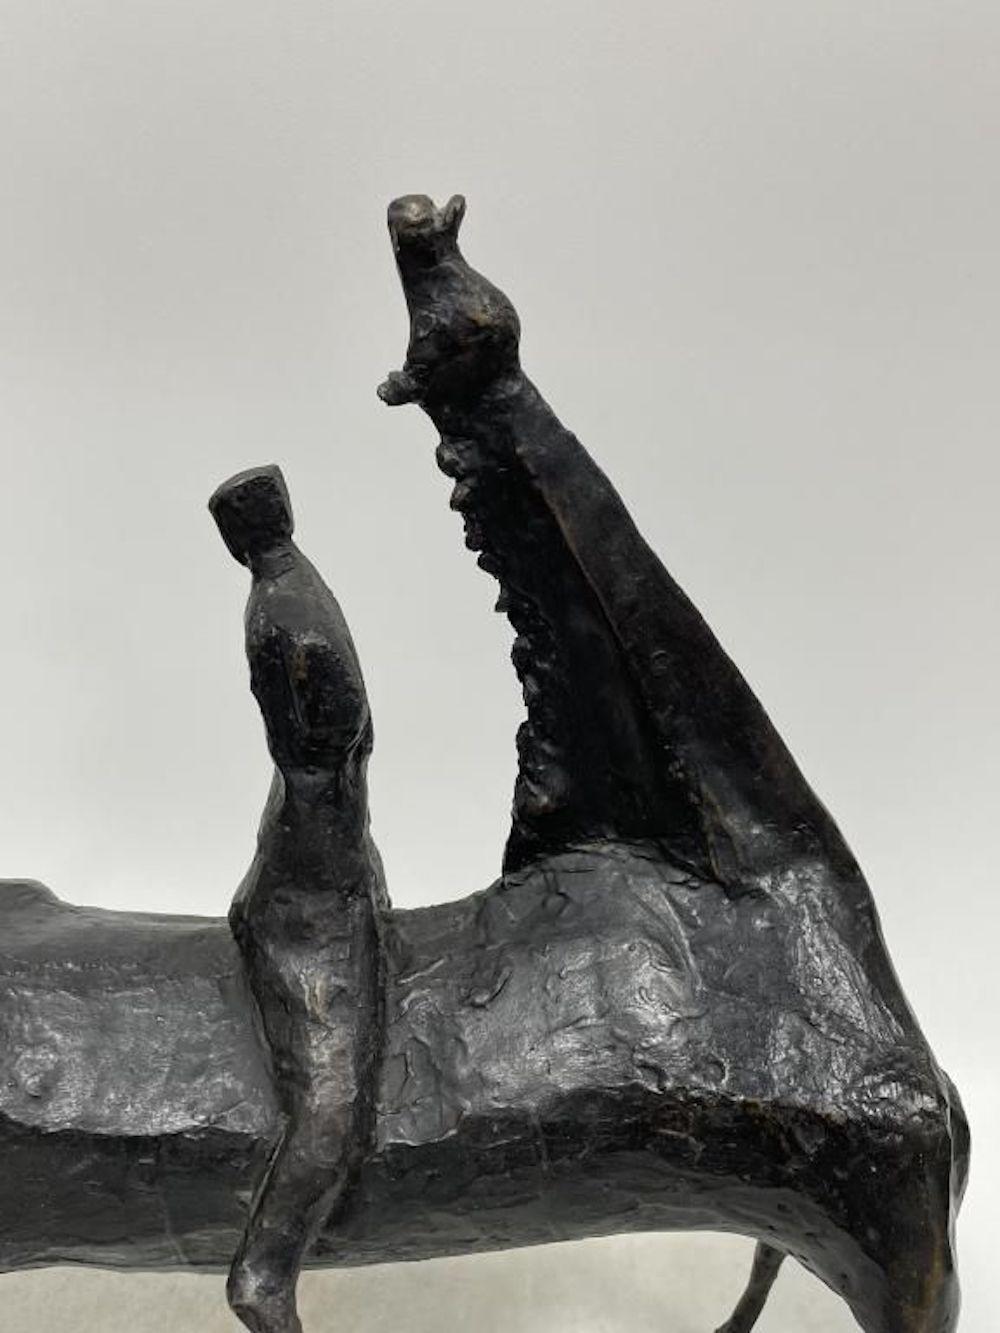 Reiterin,
Bronzeskulptur auf Marmorsockel, signiert, Auflage 1/6.
Heriberto Juárez (16. März 1932 - 26. August 2008) war ein autodidaktischer mexikanischer Bildhauer, der für seine Darstellungen von Frauen und Tieren, insbesondere Stieren, bekannt